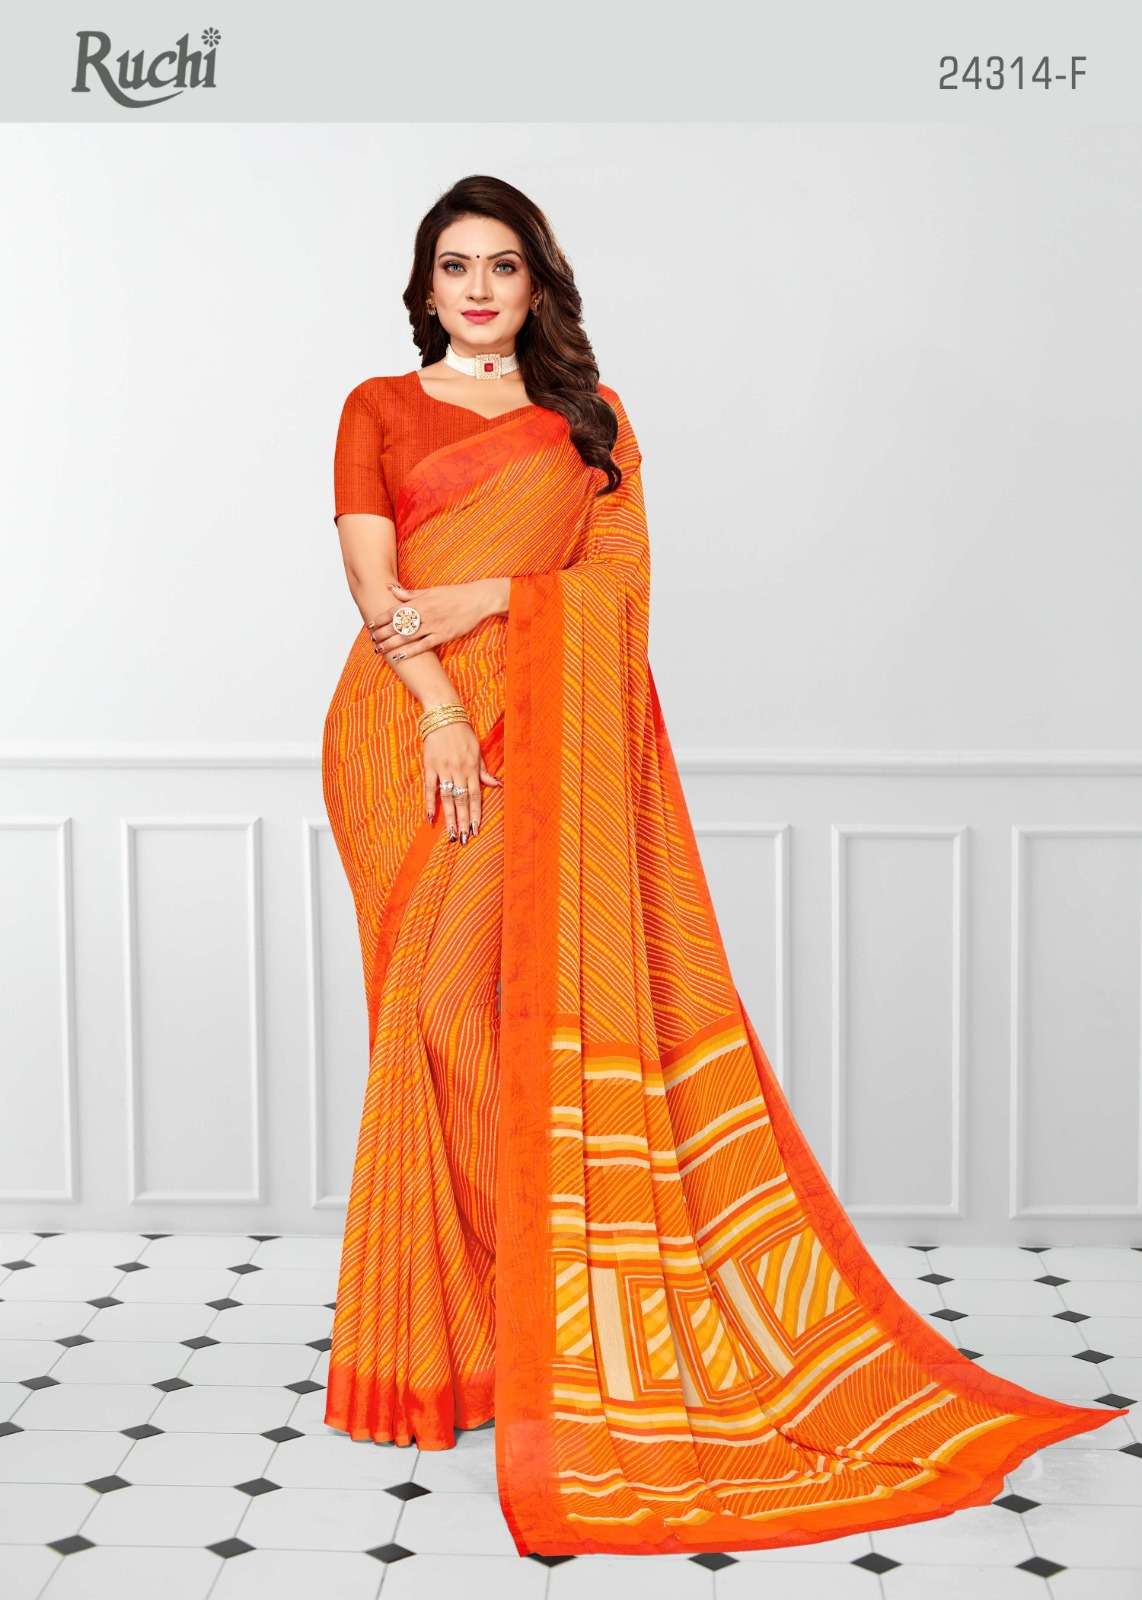 ruchi star chiffon 24314 casual wear saree collection 